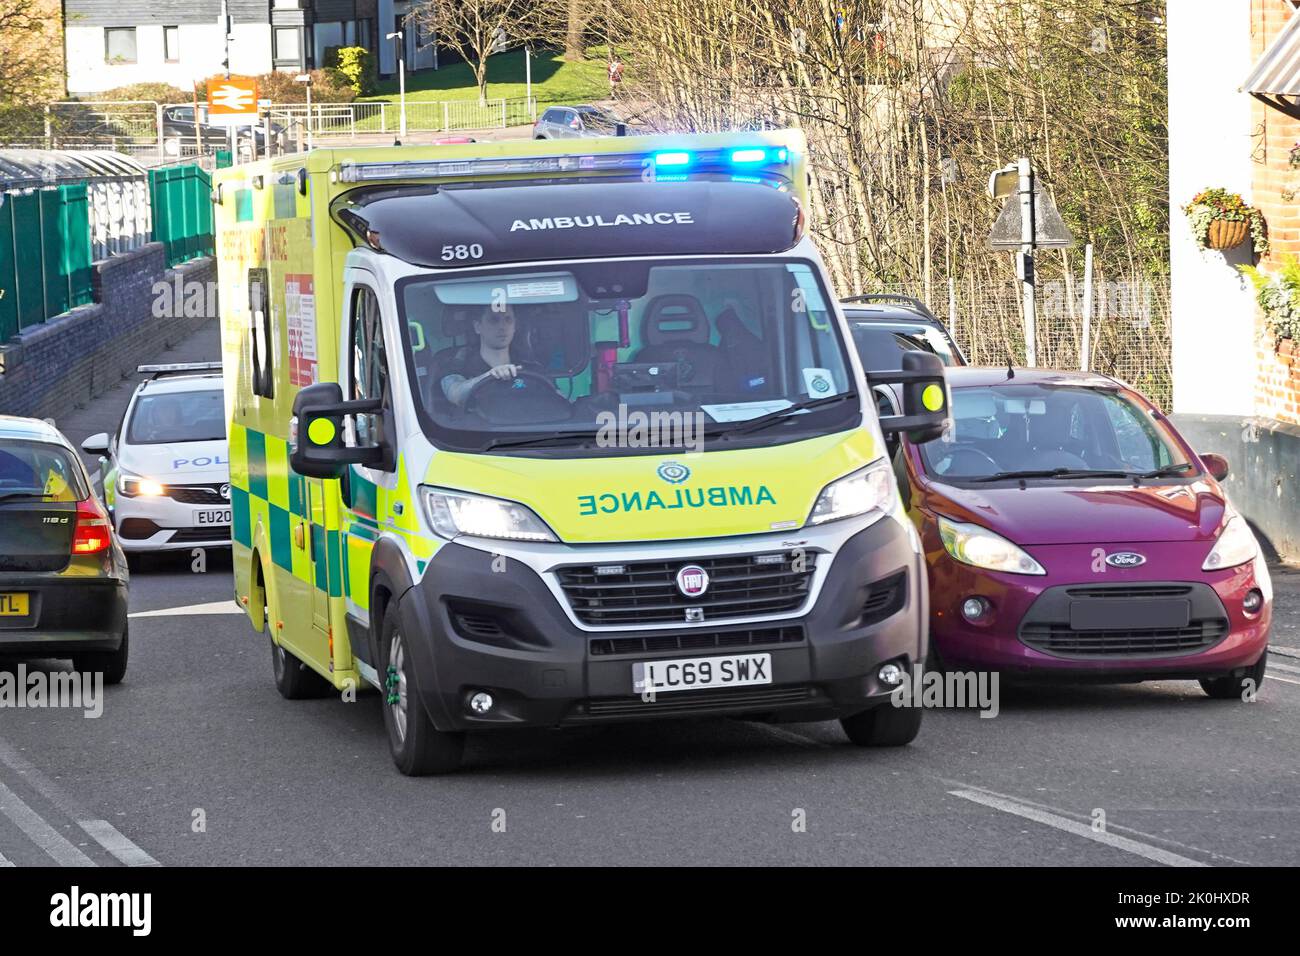 Vue rapprochée de l'avant de Fiat NHS bleu ambulance d'urgence surpassant la file d'attente suivie d'une voiture de police à Billericay High Street, Angleterre, Royaume-Uni Banque D'Images